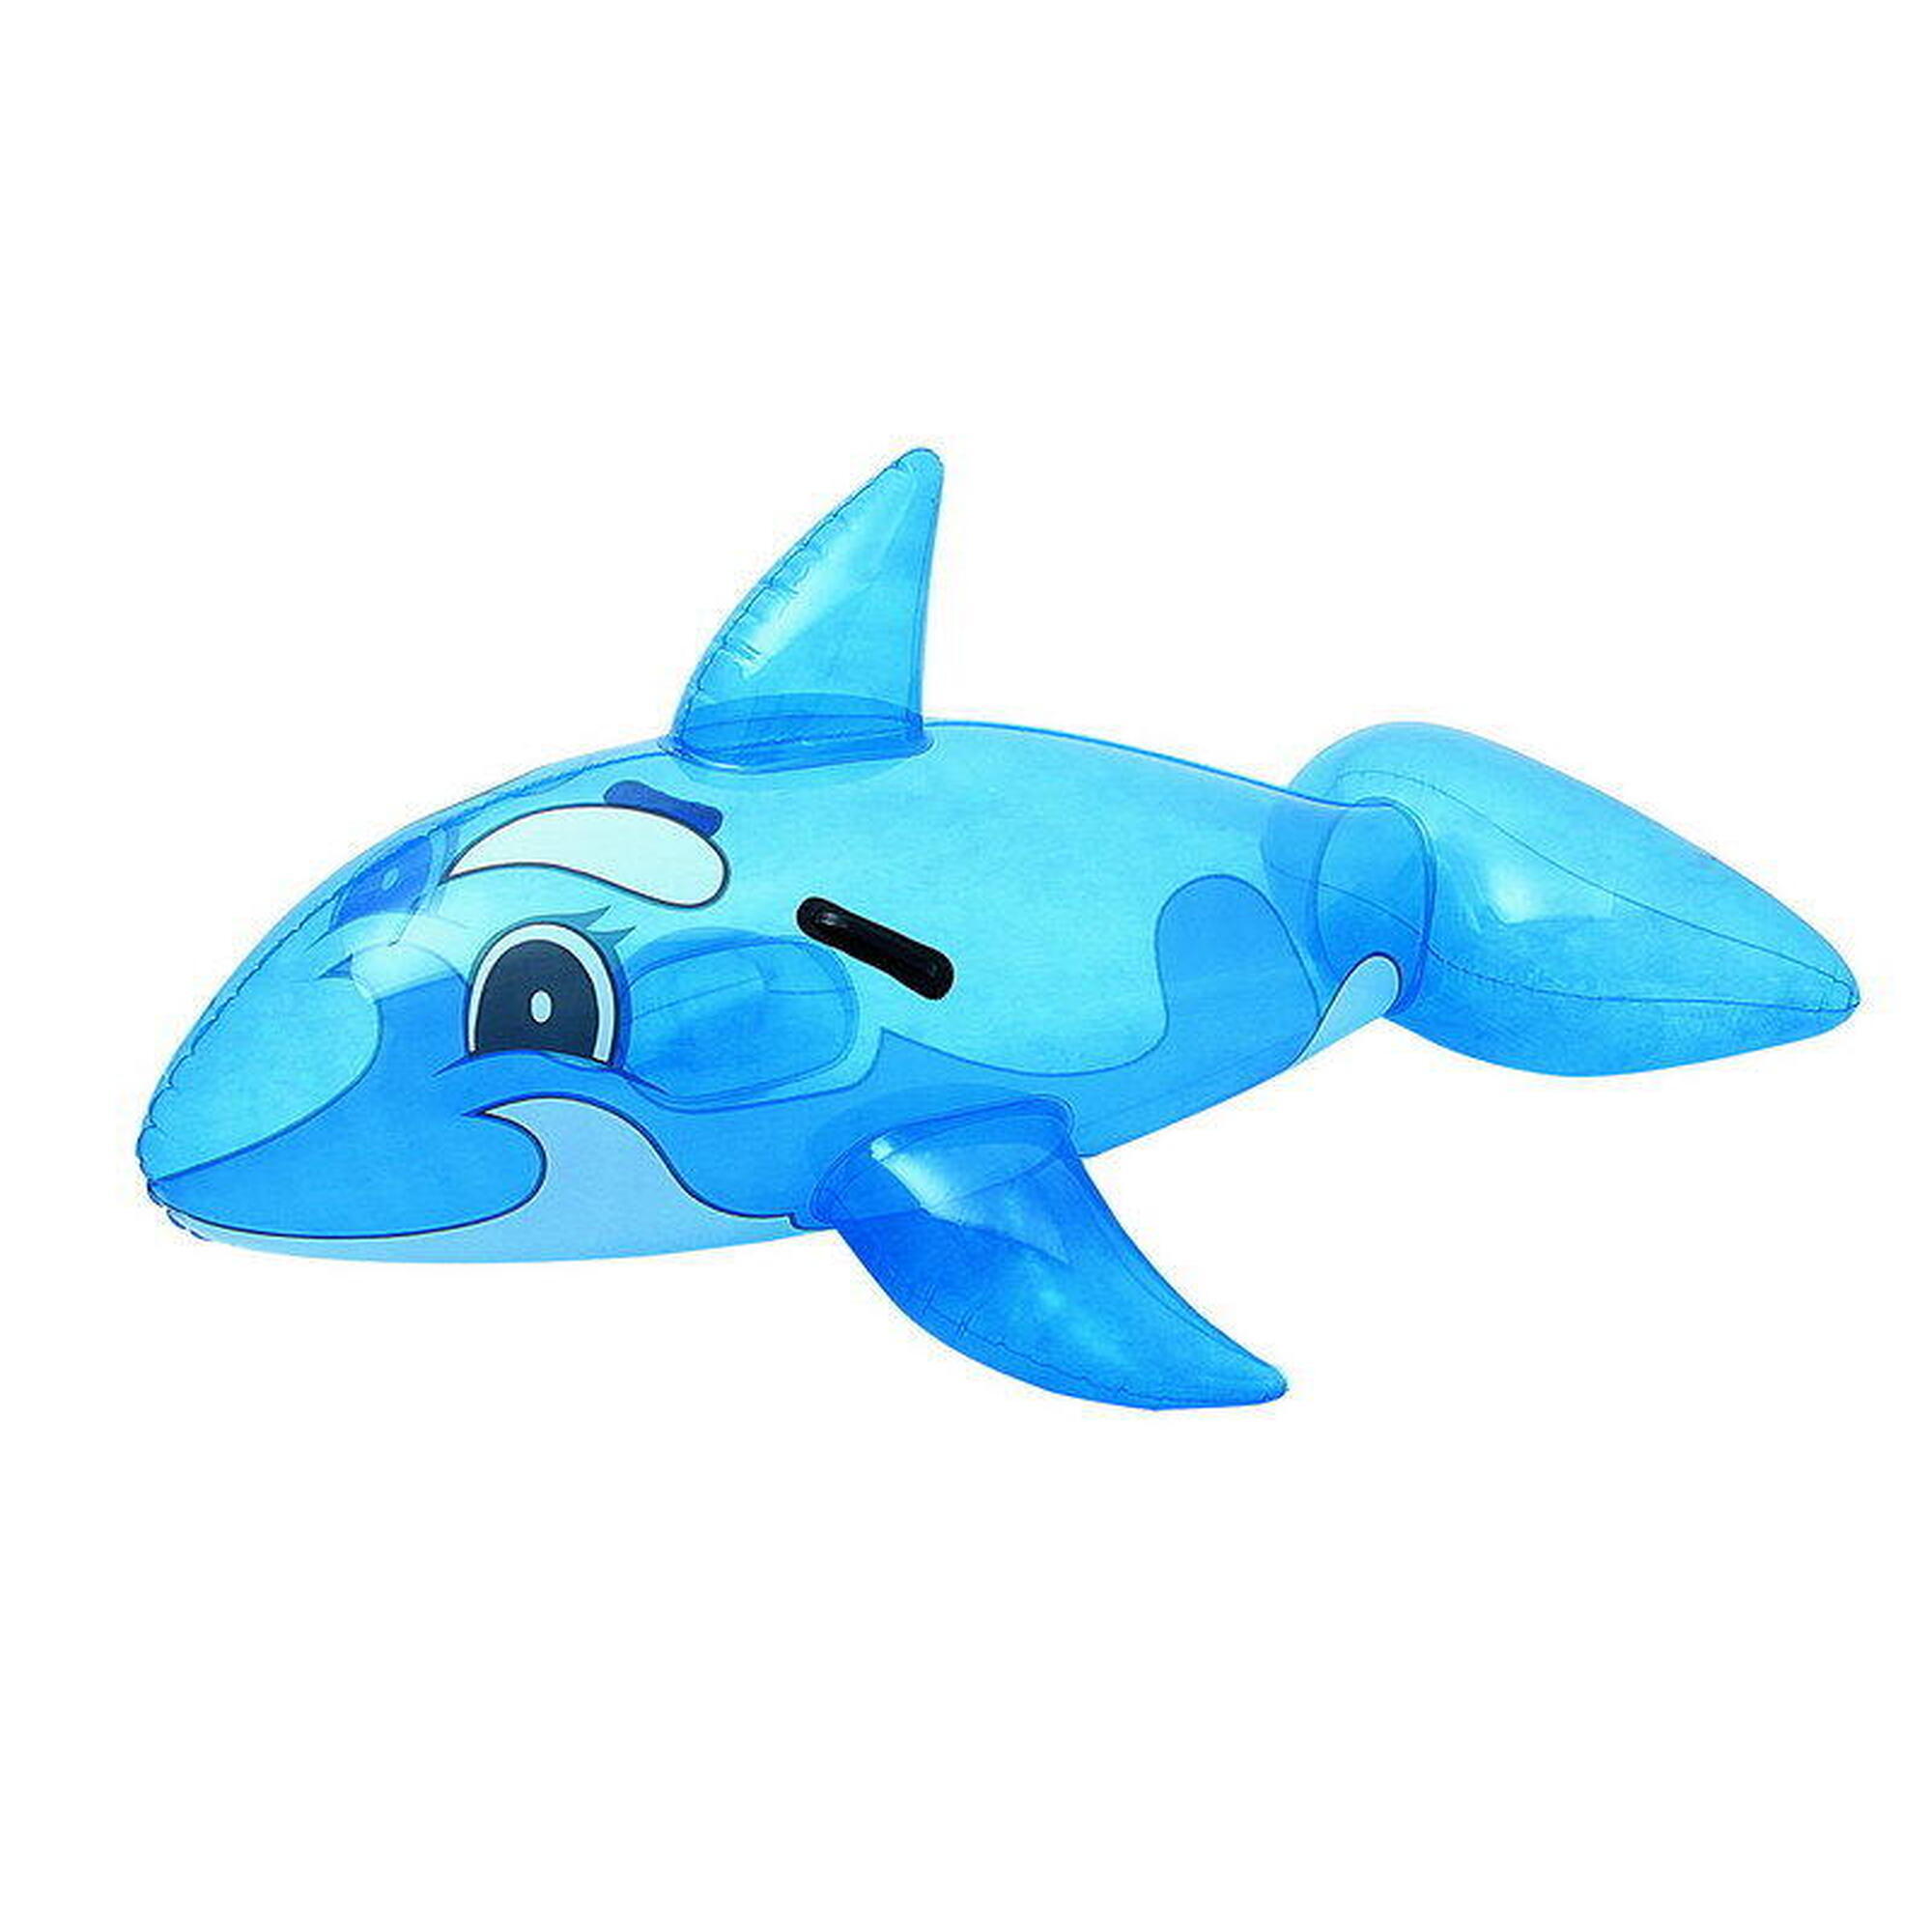 鯨魚造型坐式水泡 62"x 37" - 藍色